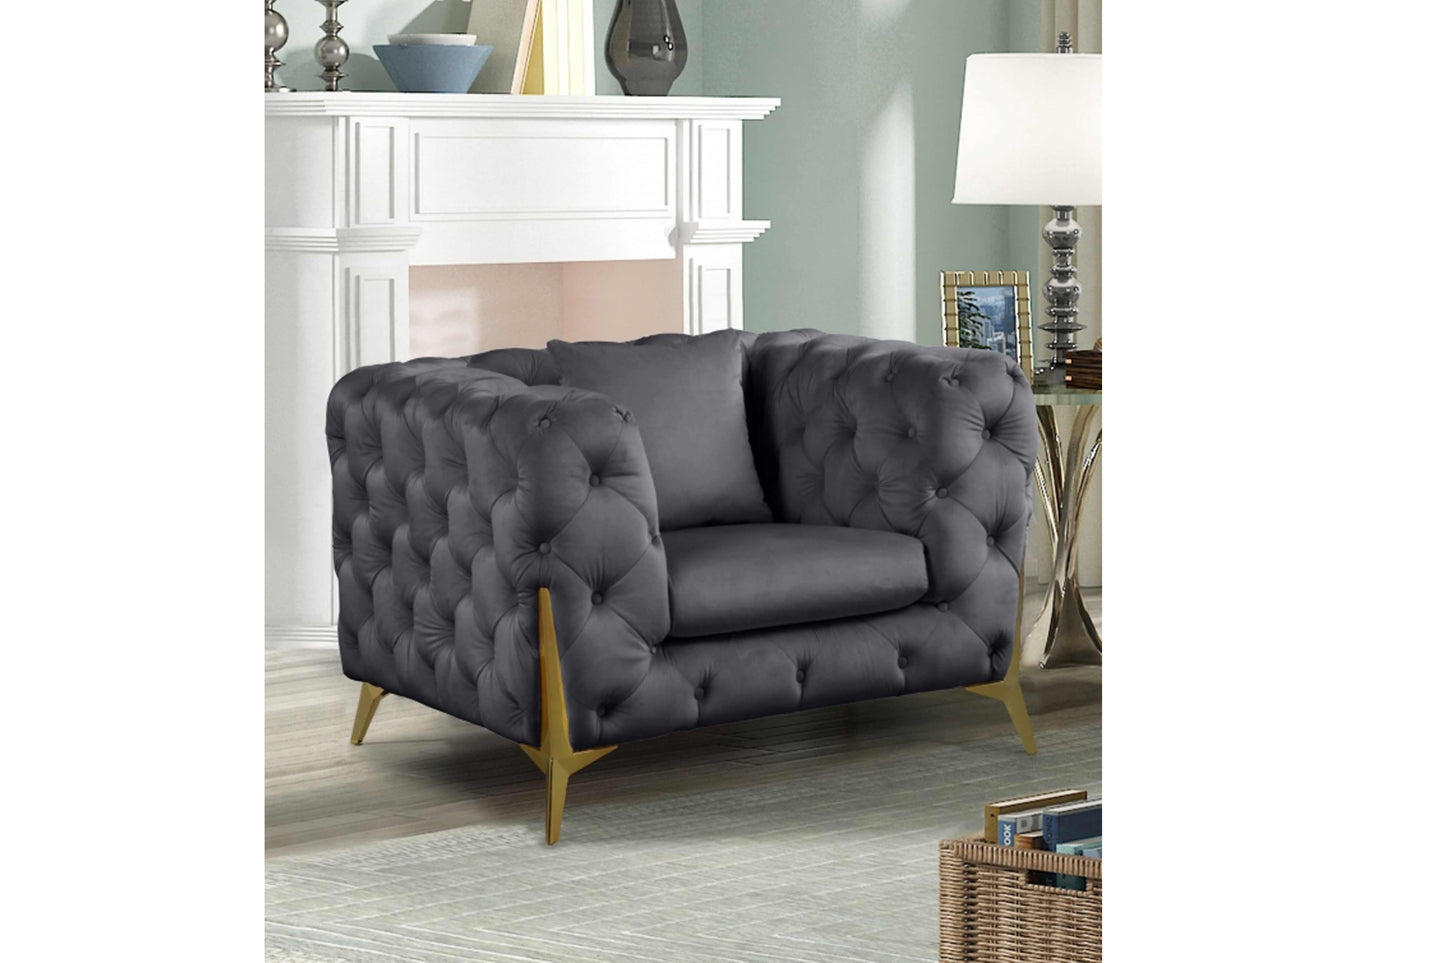 Kingdom Velvet Chair SKU: 695-C - Venini Furniture 